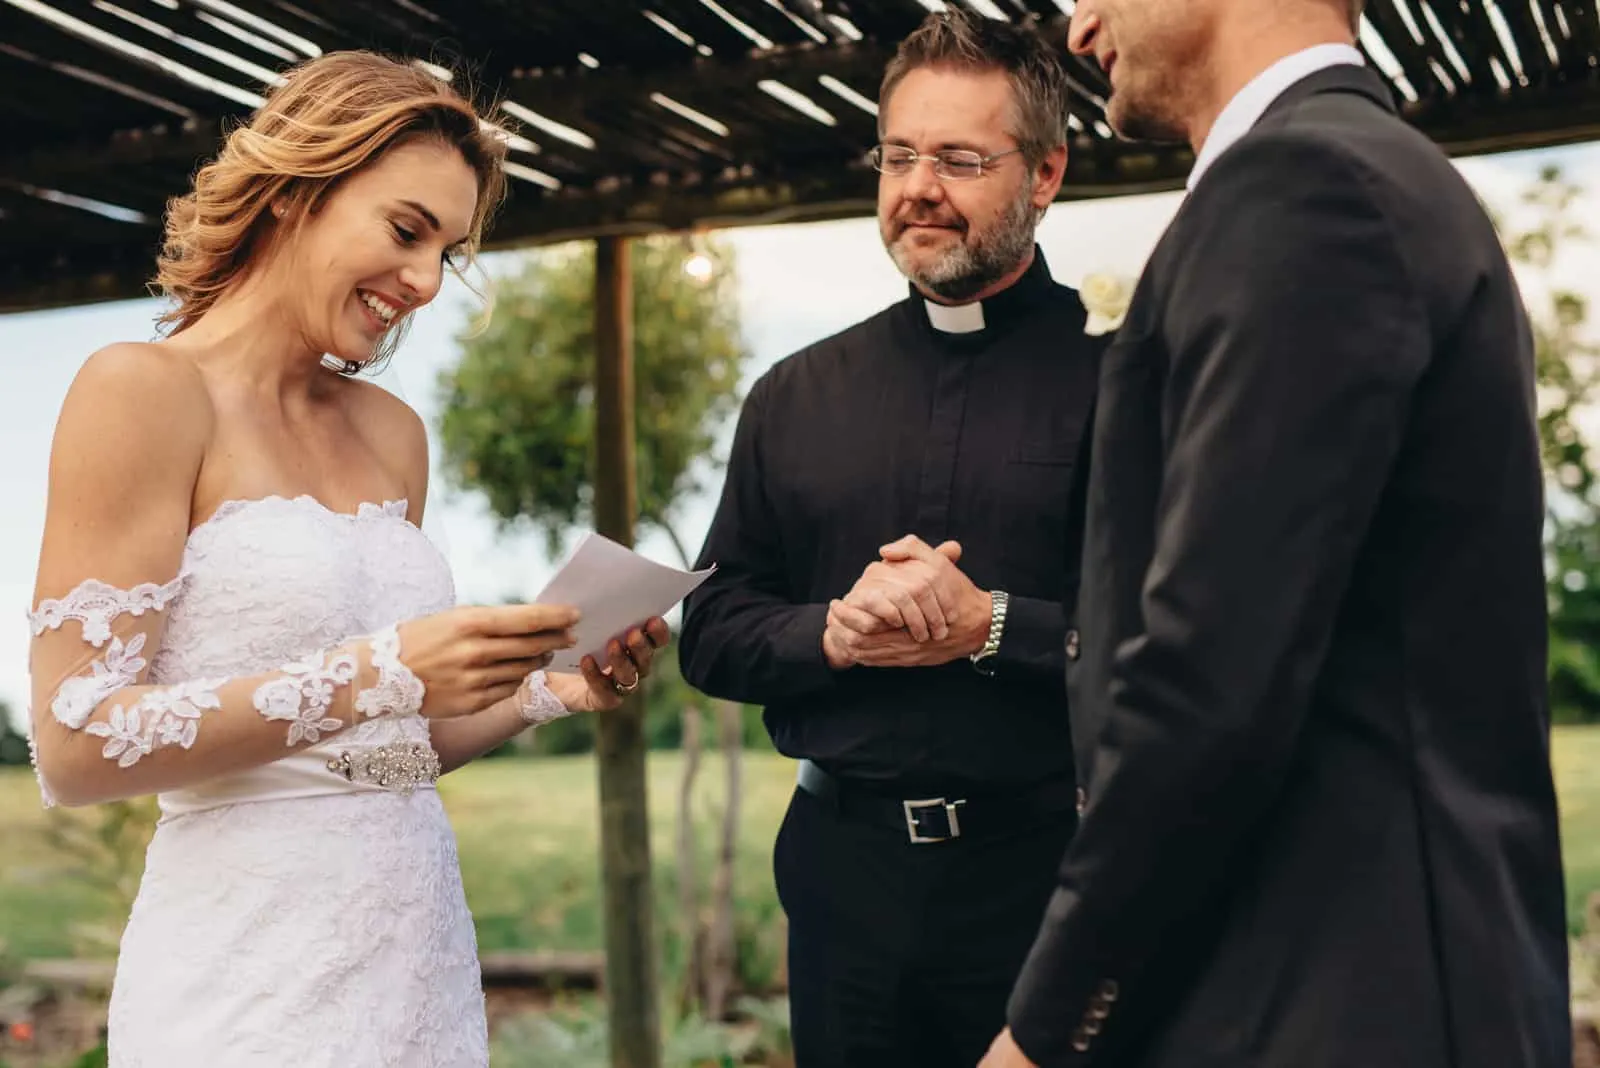 Frau las Gelübde vom Papier für ihren Ehemann am Hintergrund der Hochzeitszeremonie